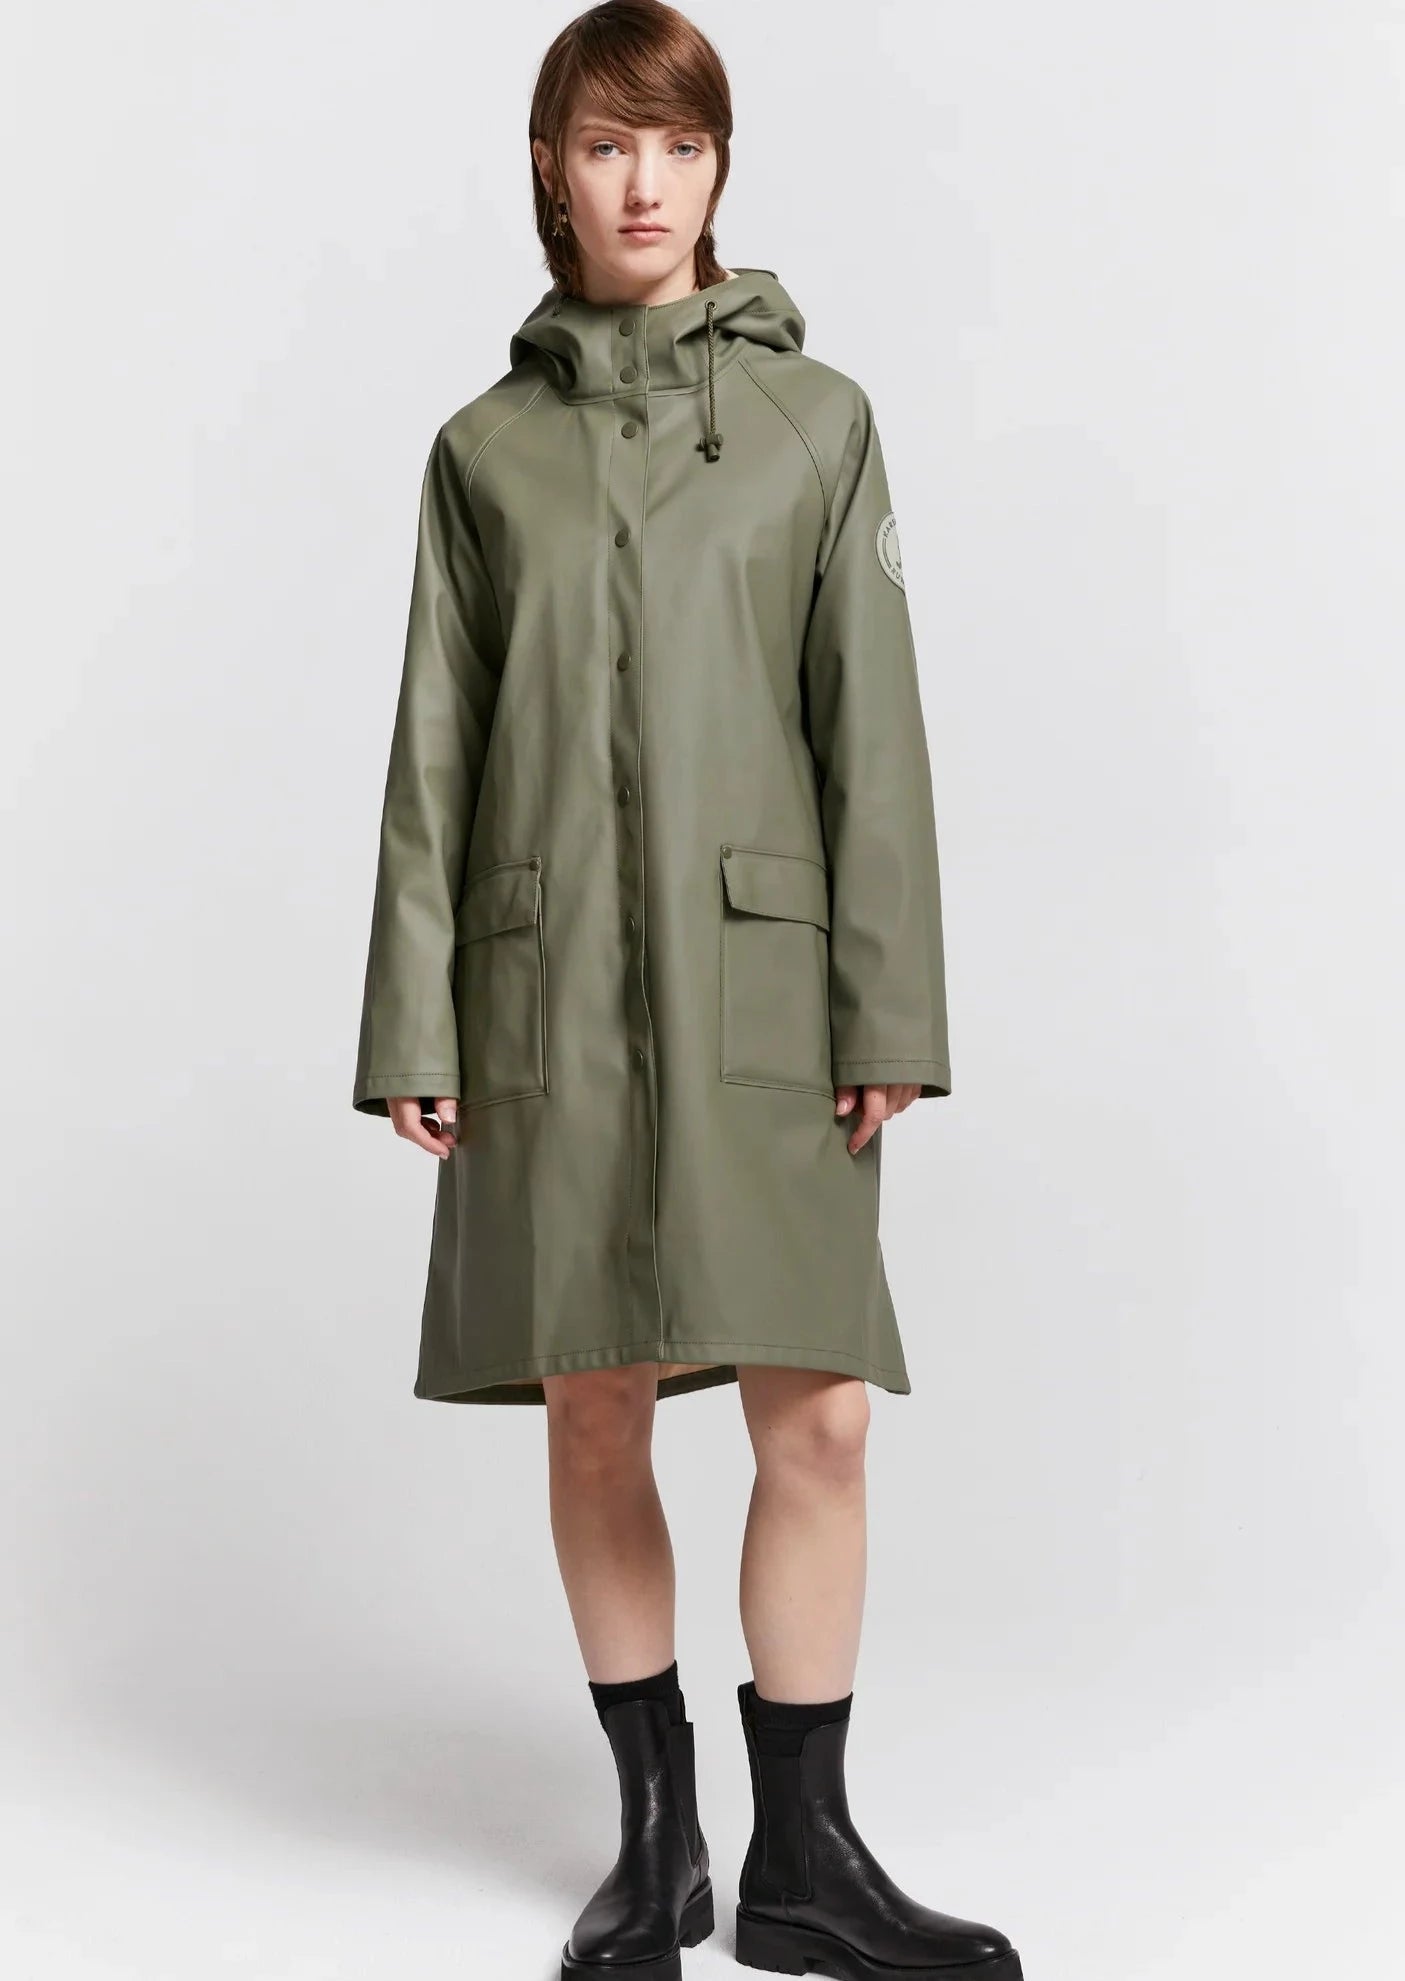 Runaway Raincoat - Olive